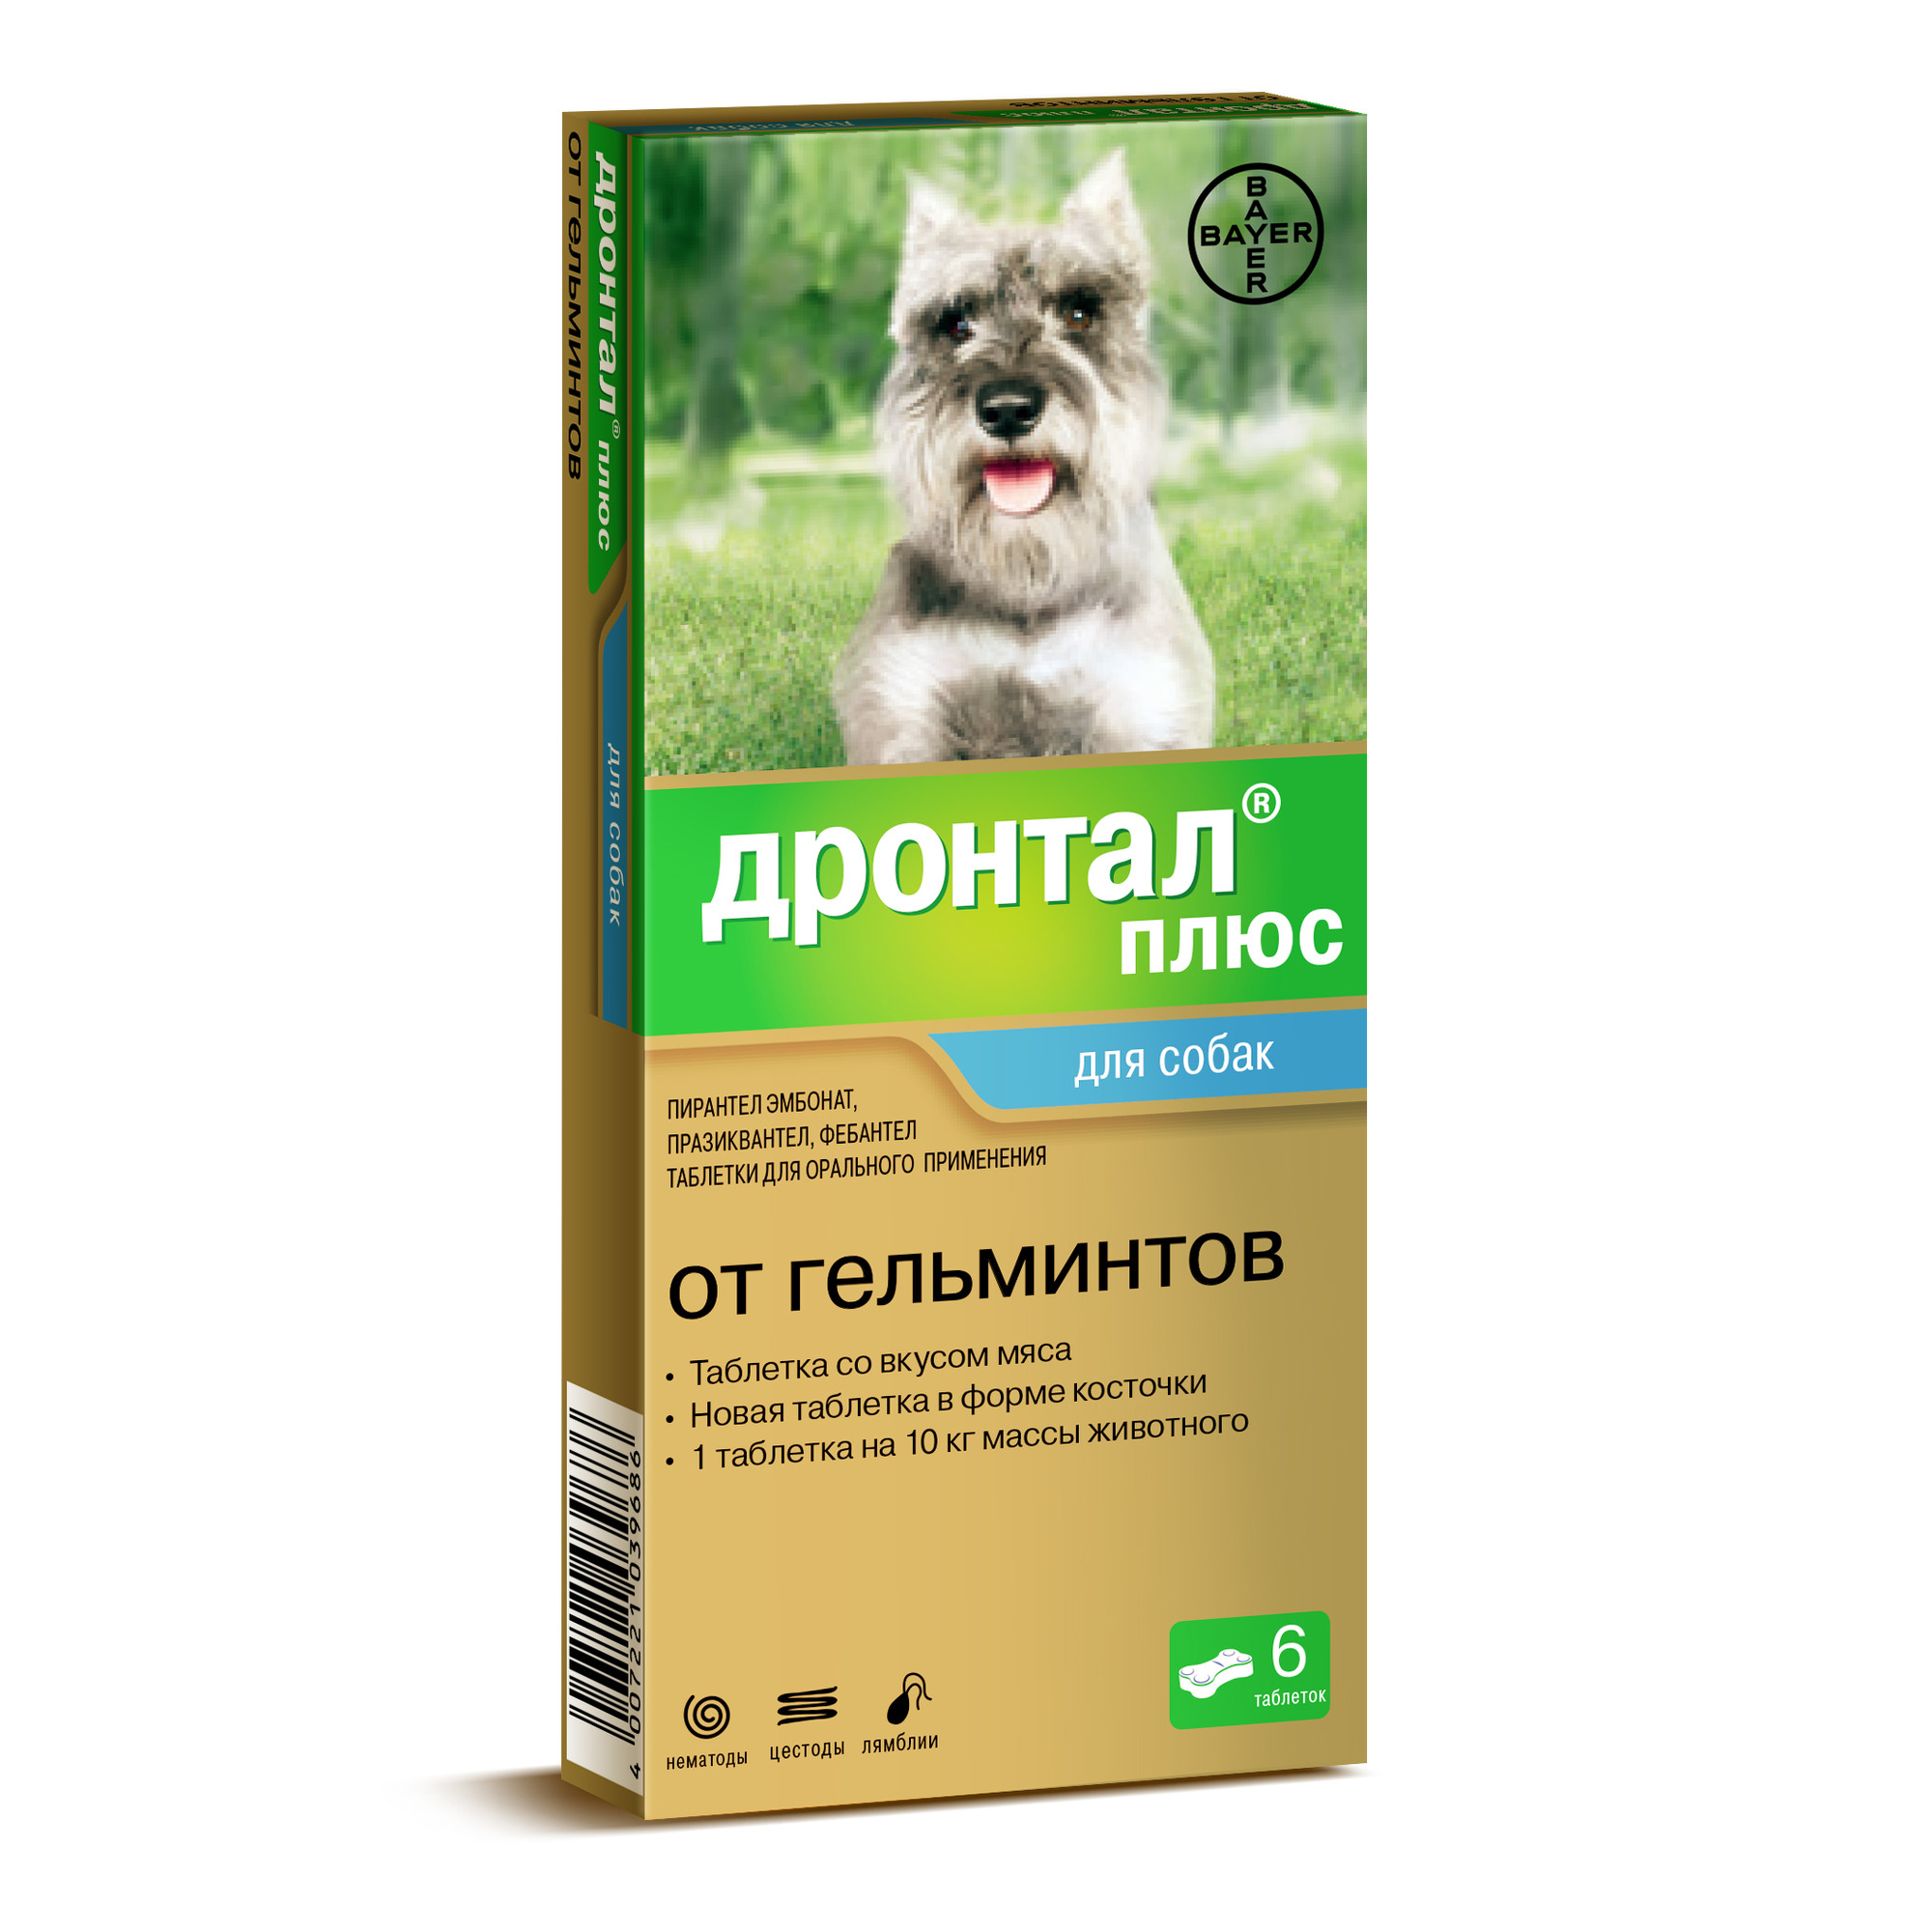 таблетки для собак "дронтал плюс" от гельминтов и простейших со вкусом мяса (1 таблетка на 10кг), 1 таблетка